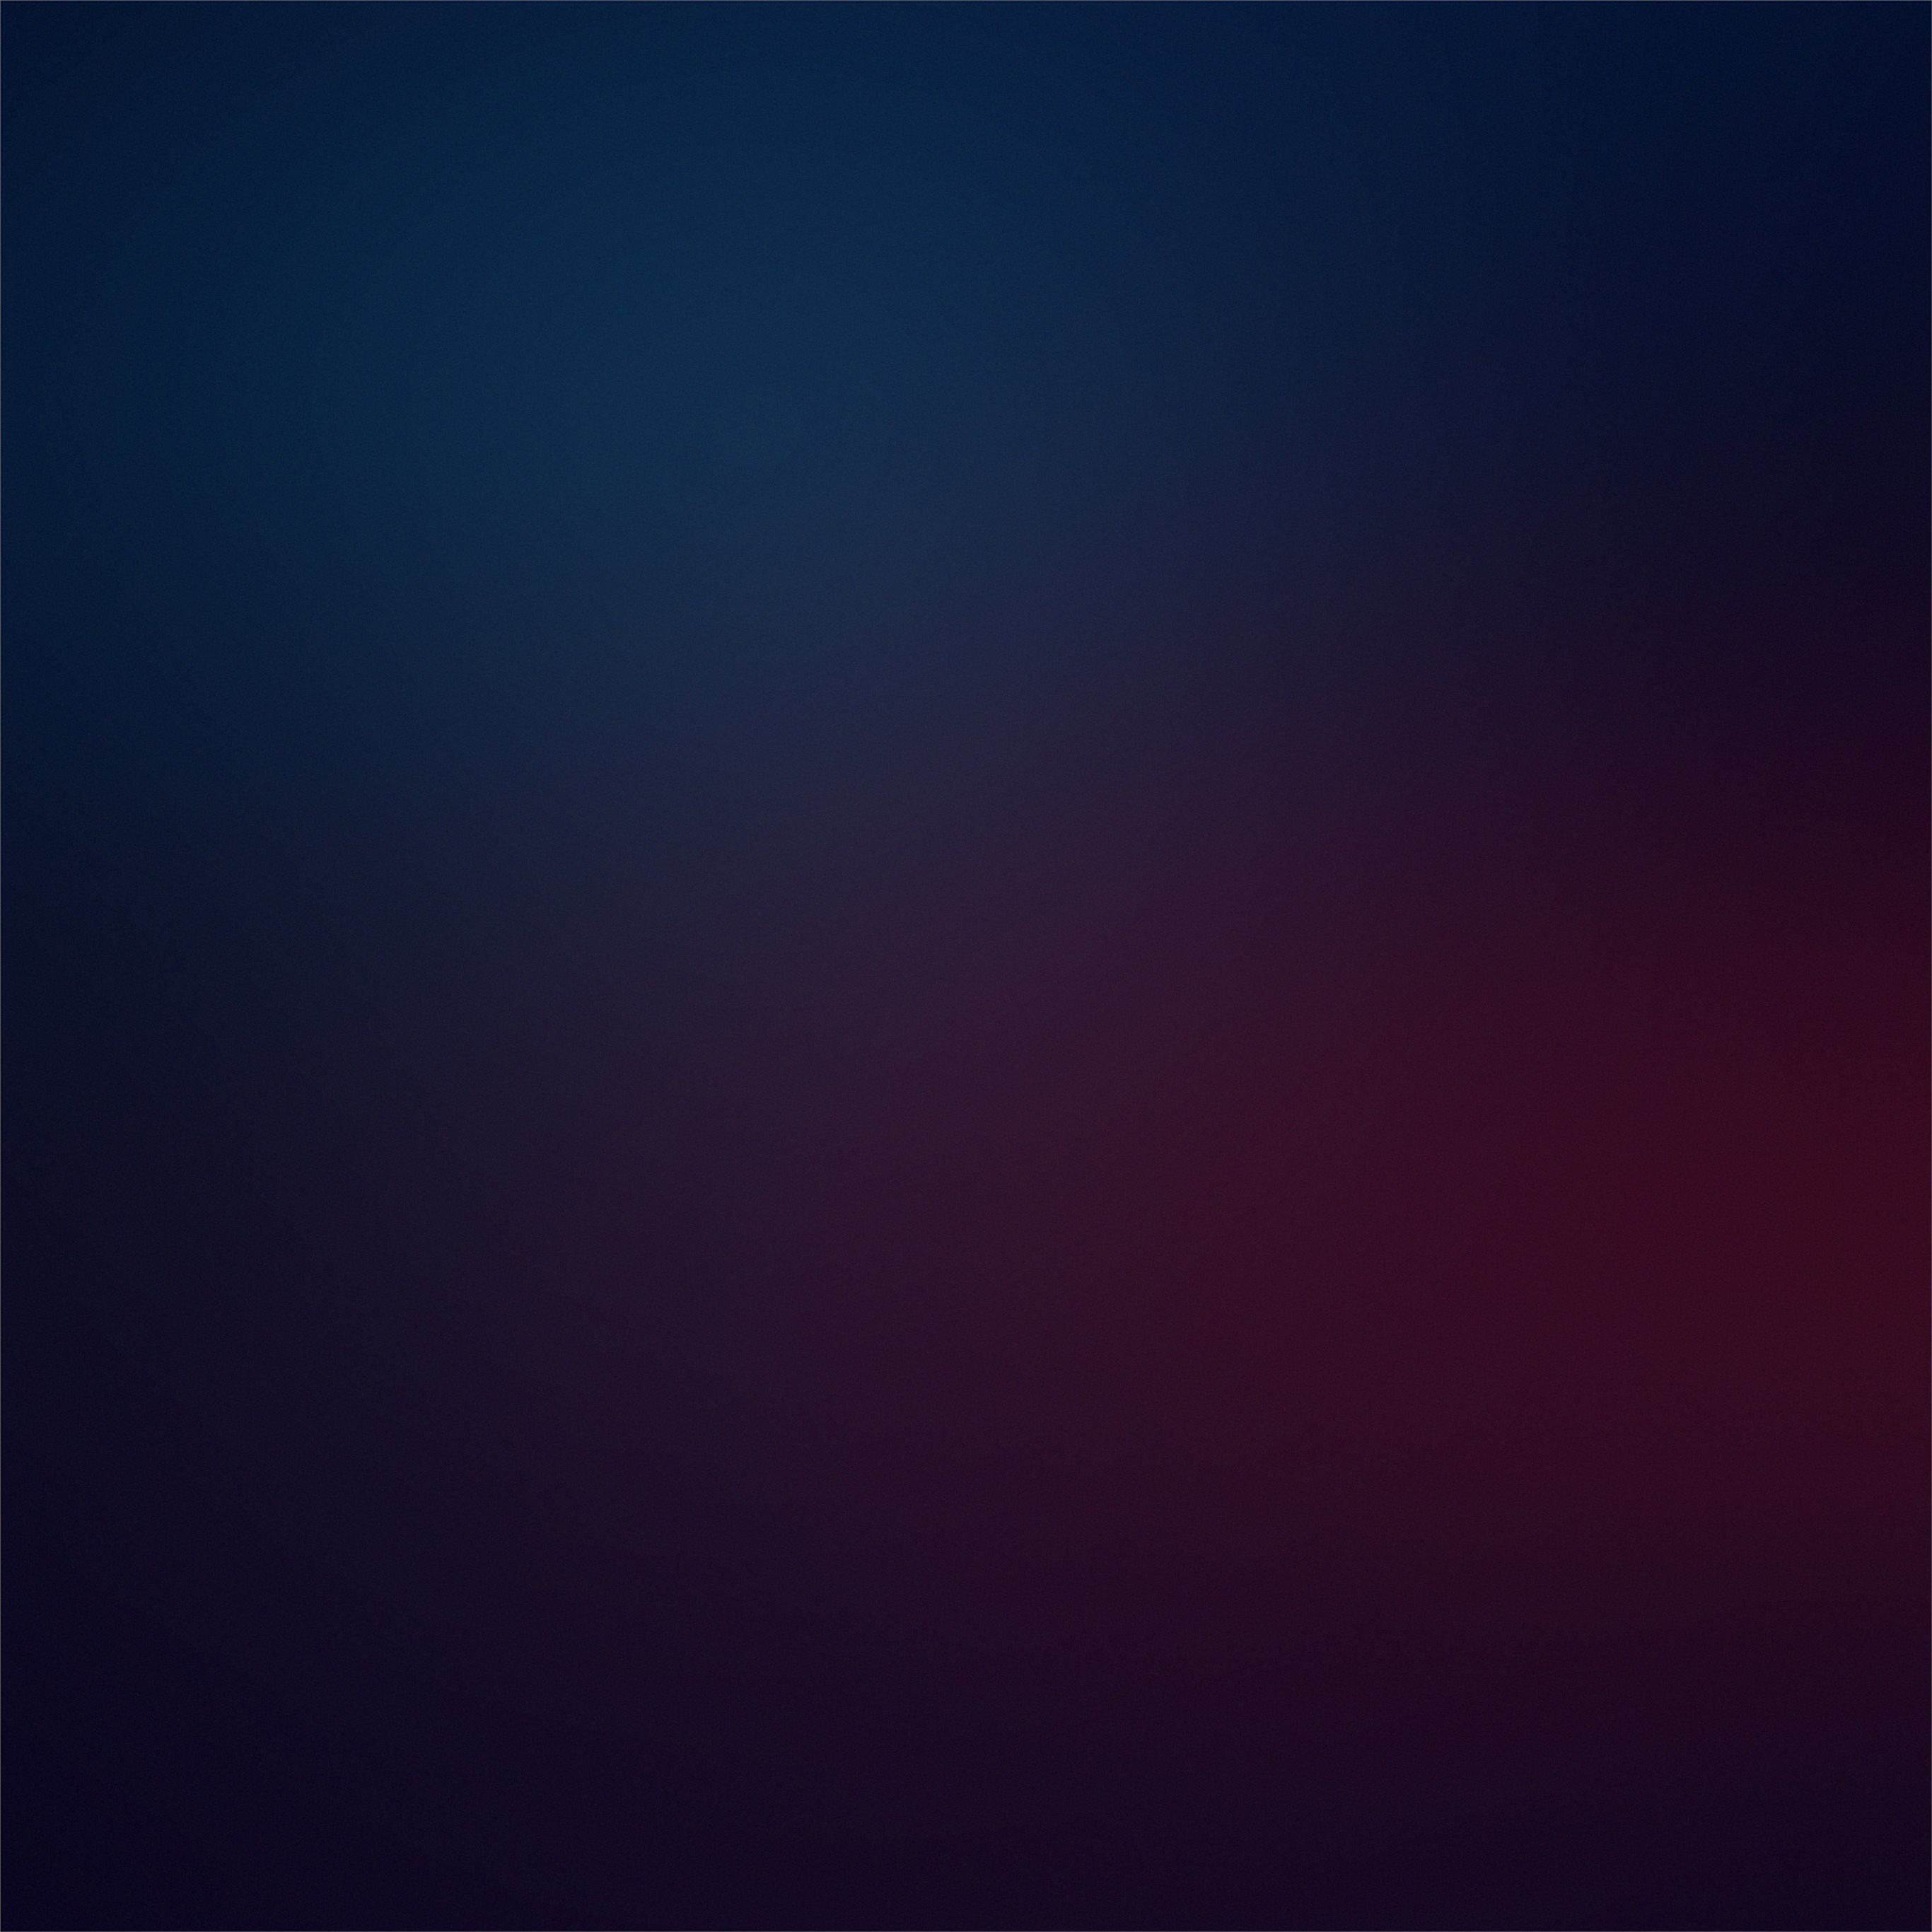 Best Blur iPad Pro HD Wallpaper